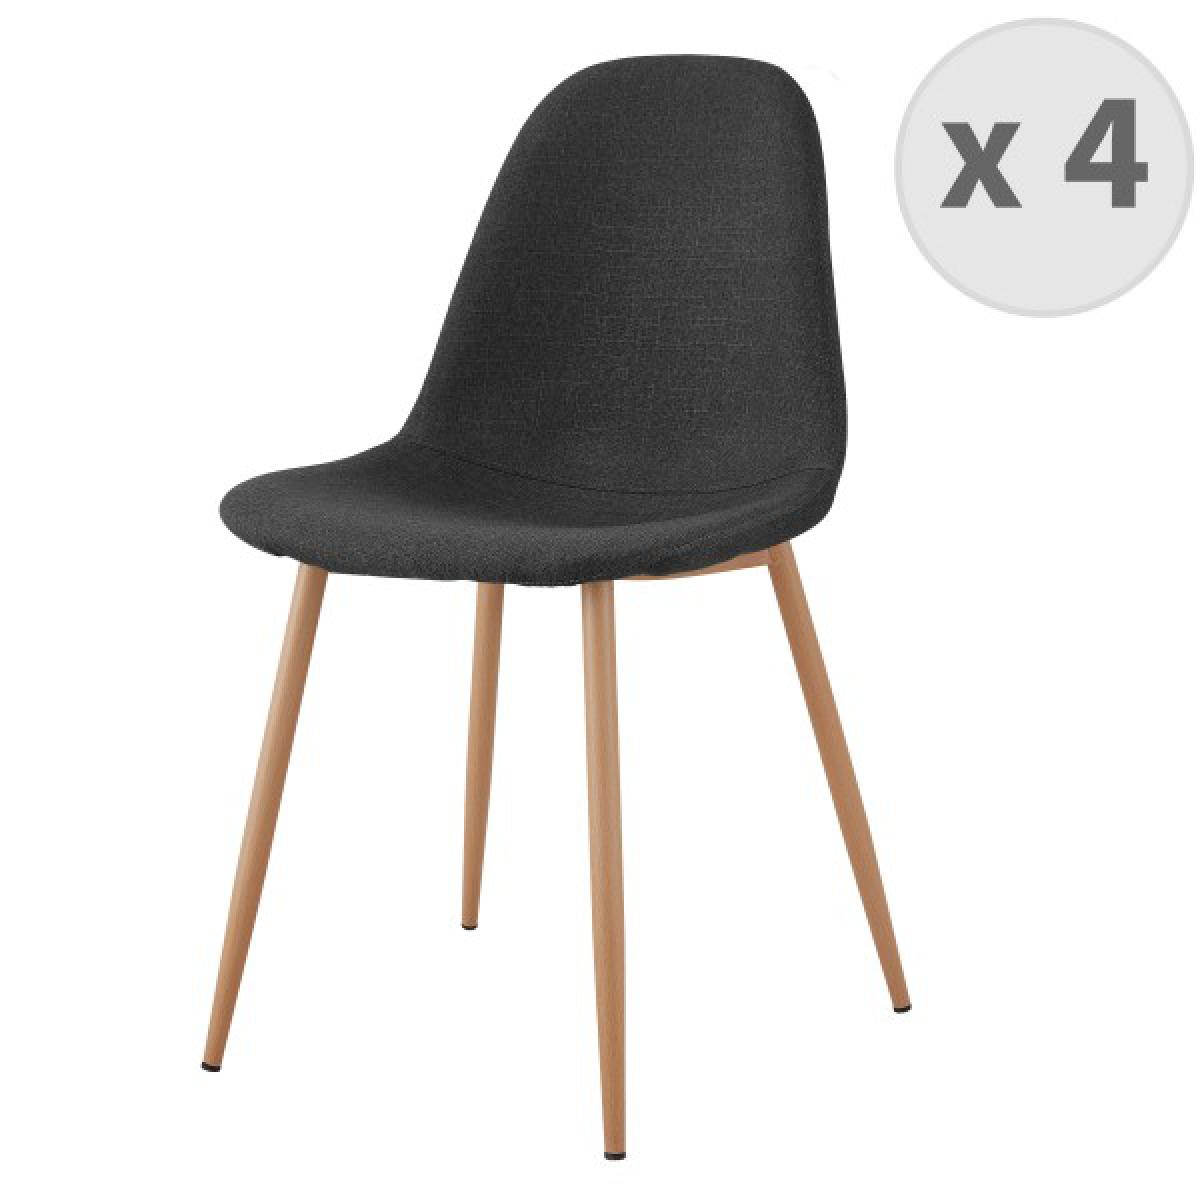 Moloo - Lot X4 chaises Orlando tissu gris foncé pieds métal bois - Chaises